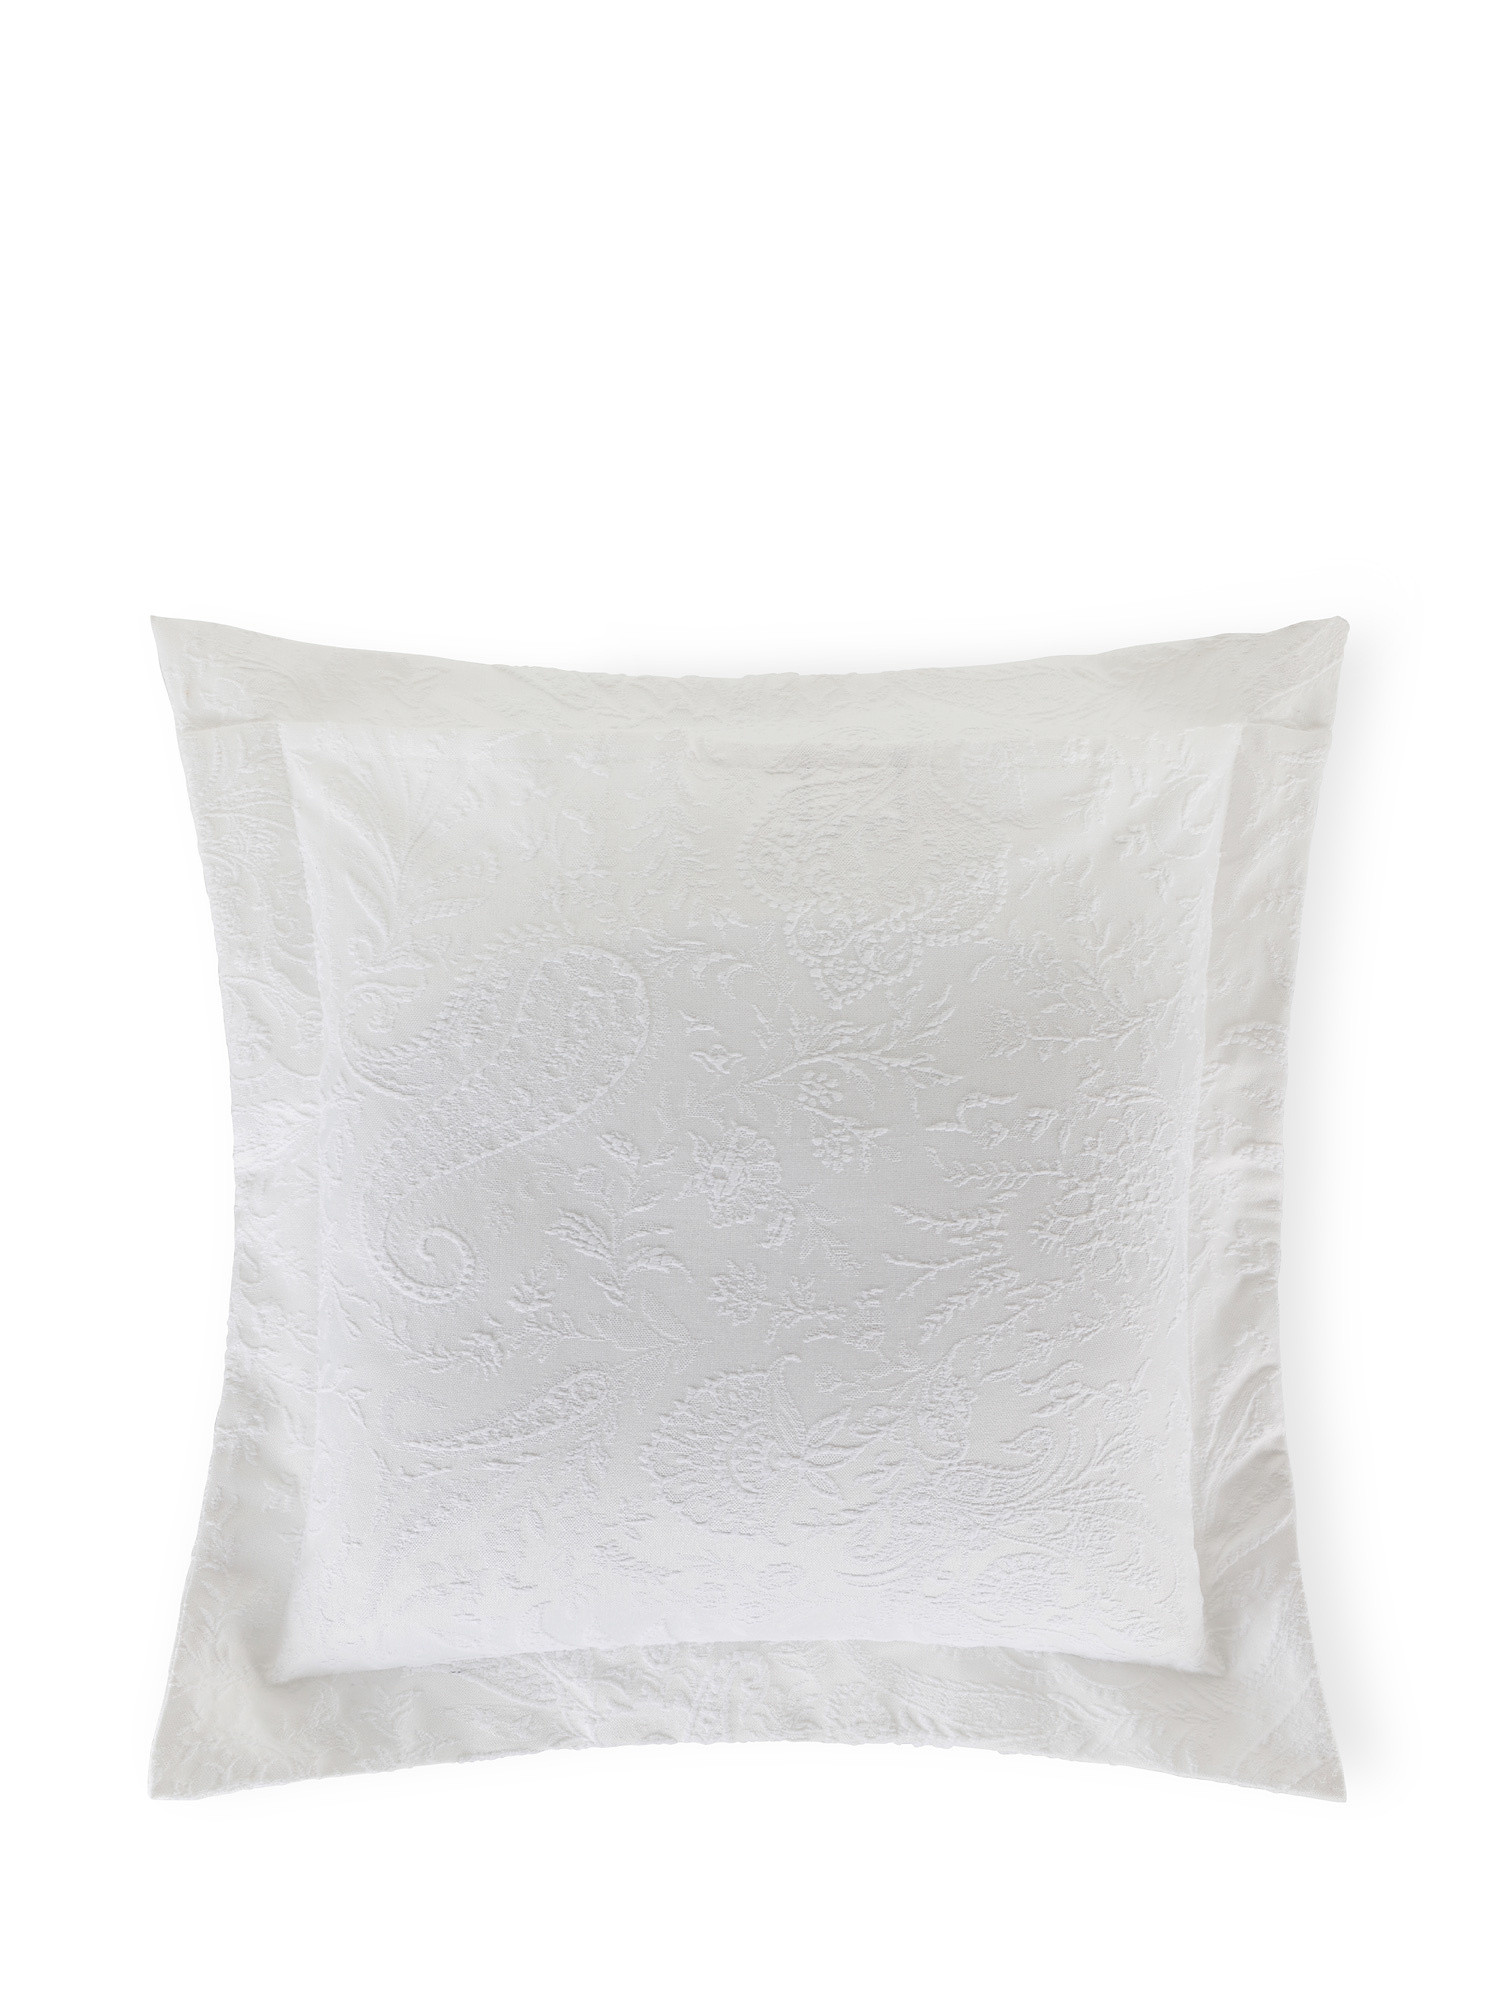 Portofino paisley patterned cushion, White, large image number 1